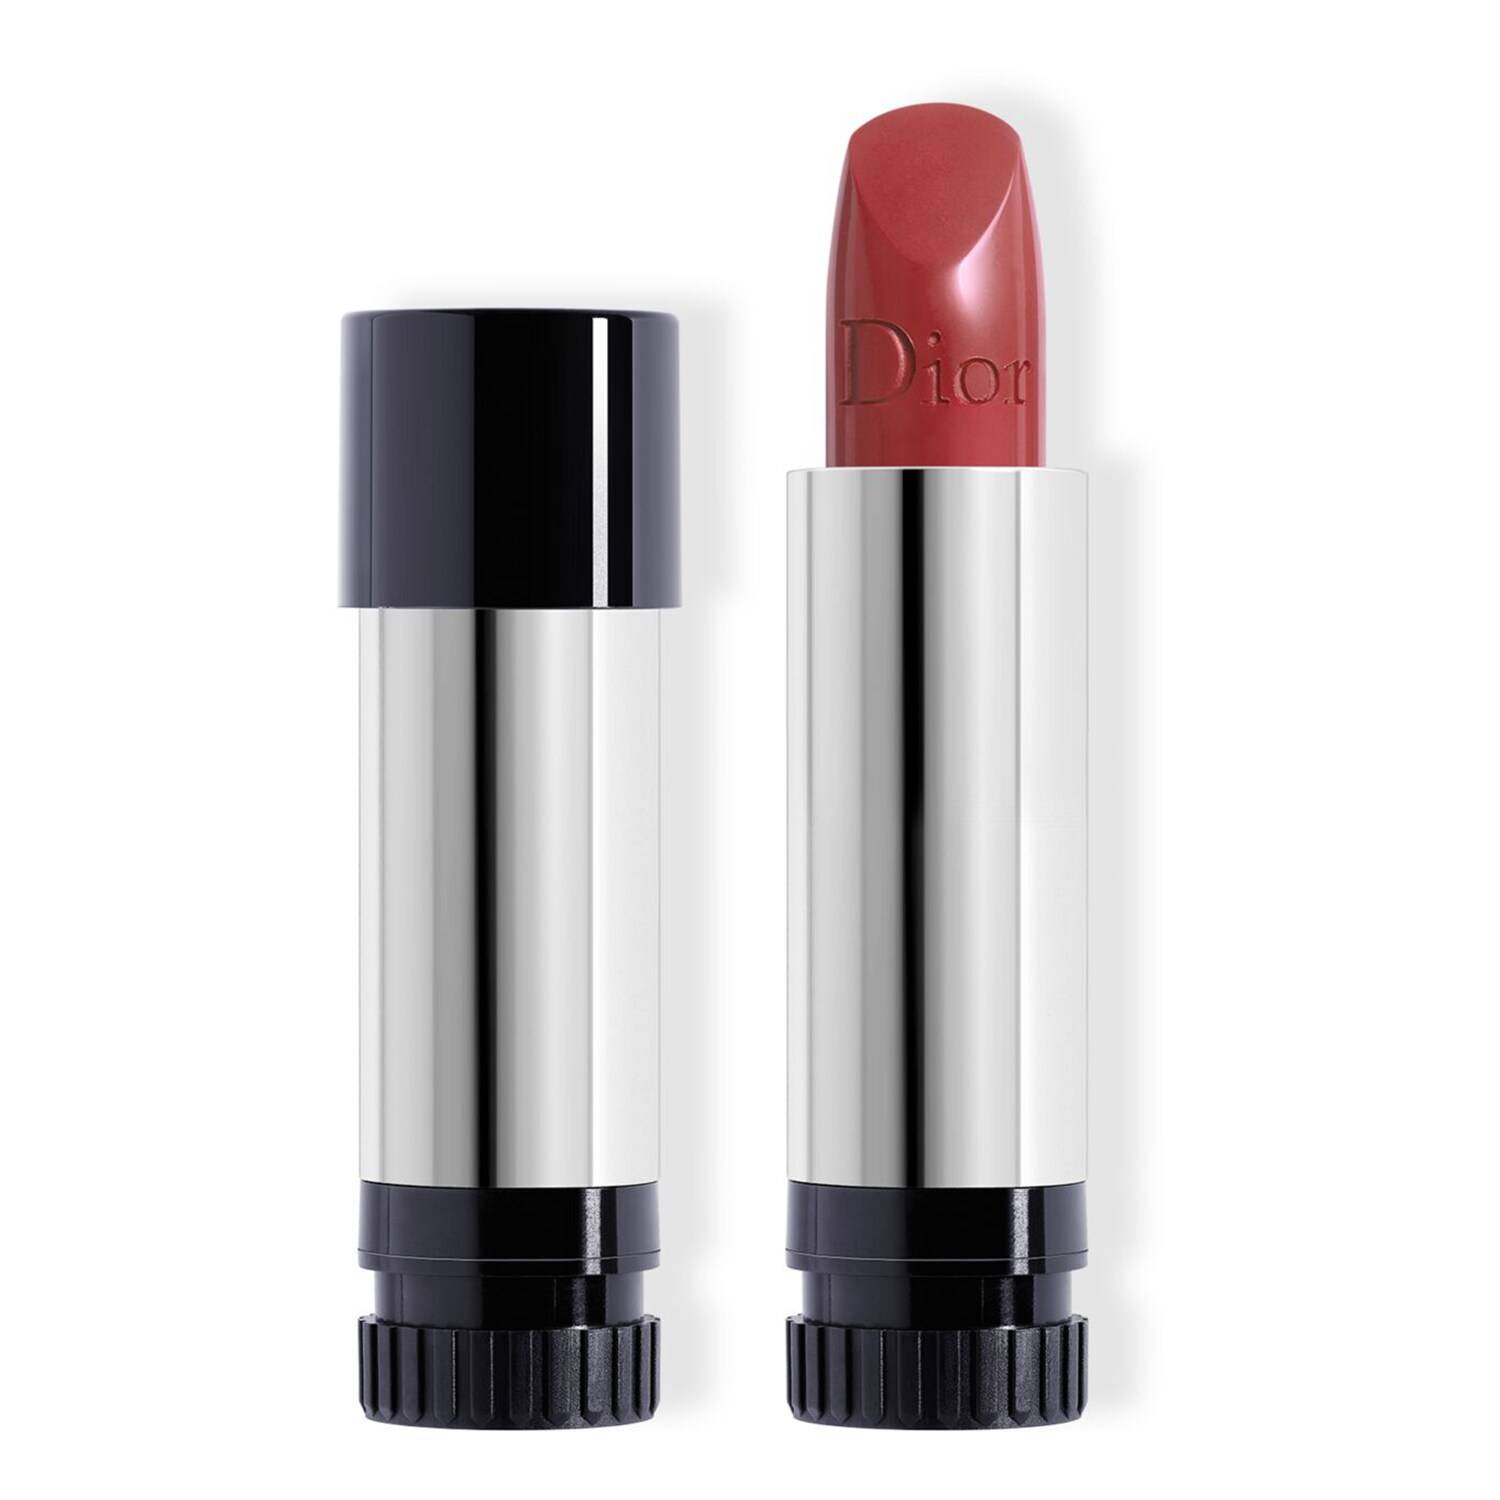 Dior Rouge Dior Couture Colour Lipstick Refill 720 Icone Satin Finish 3.5G